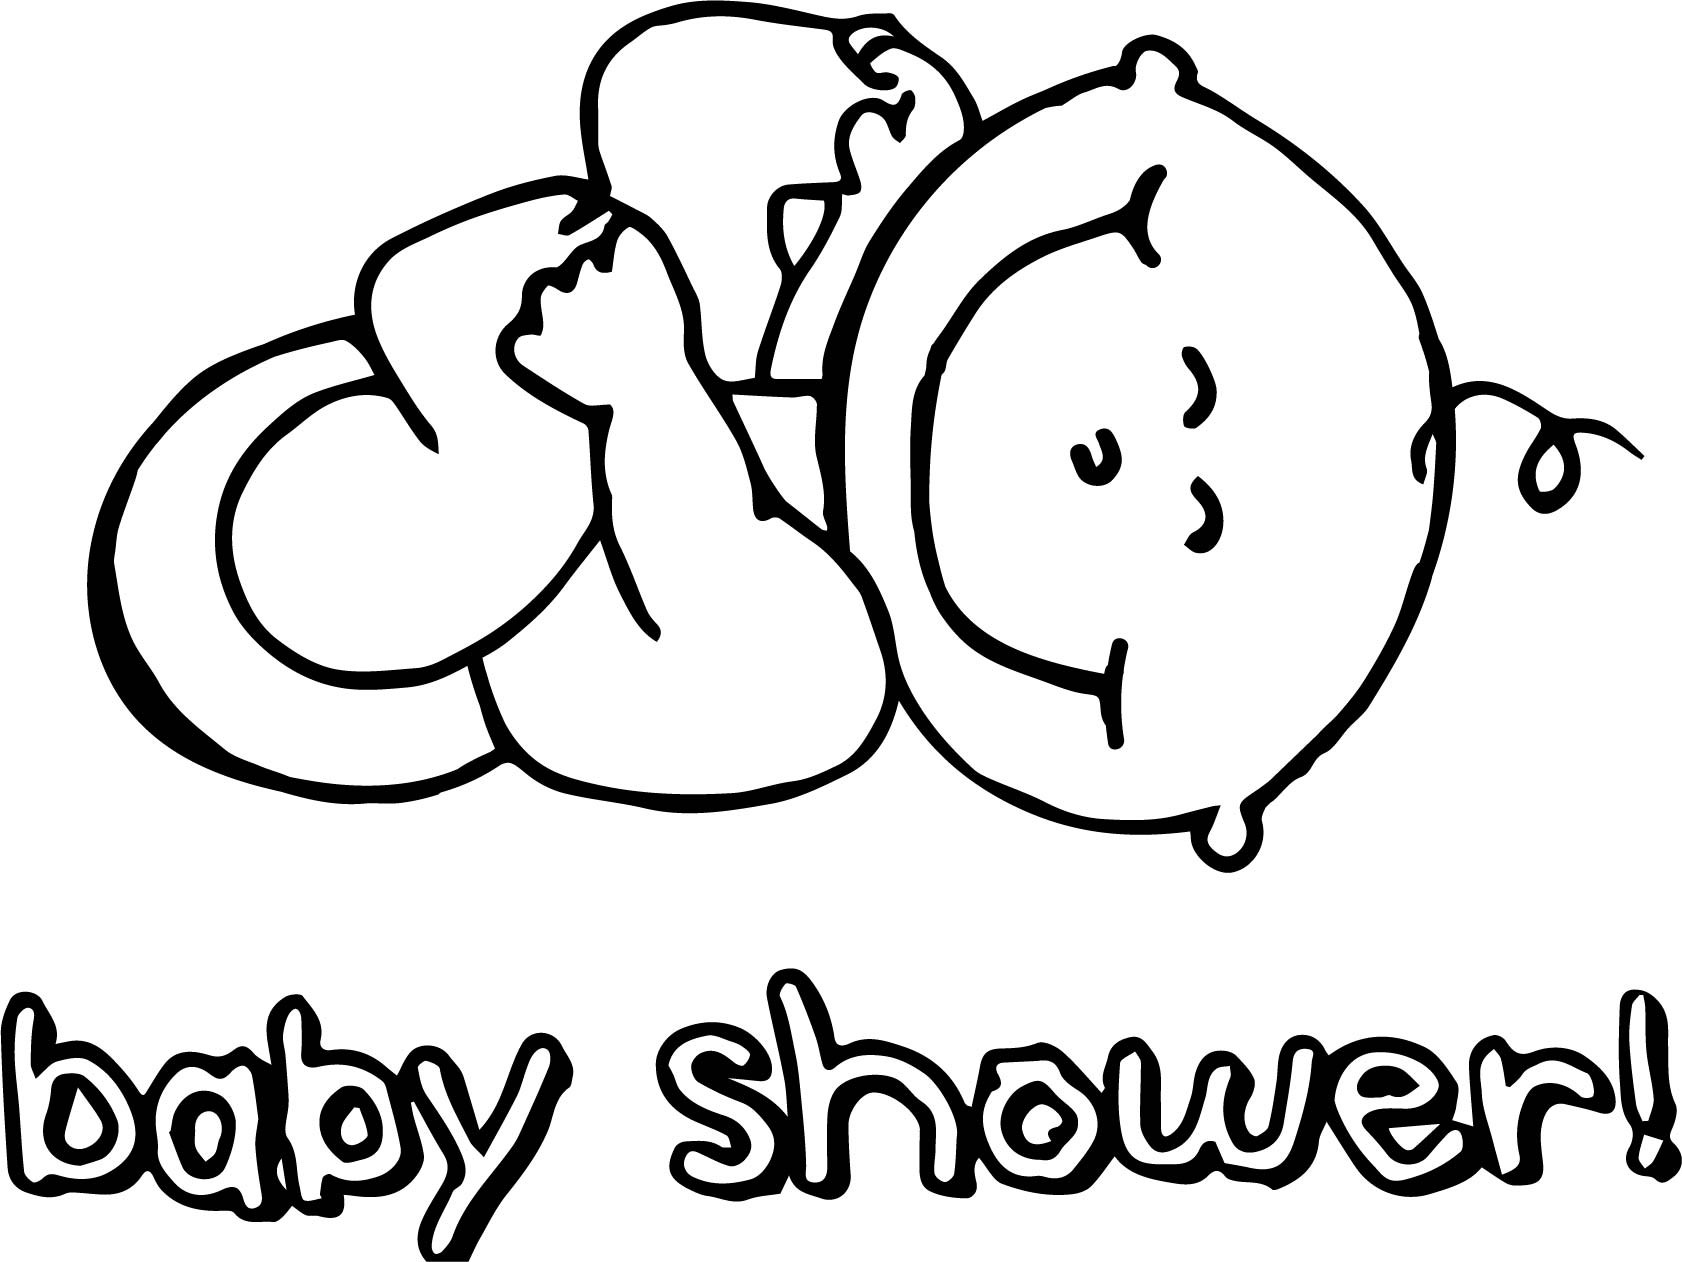 Baby Shower Coloring Page
 Baby Shower Coloring Page